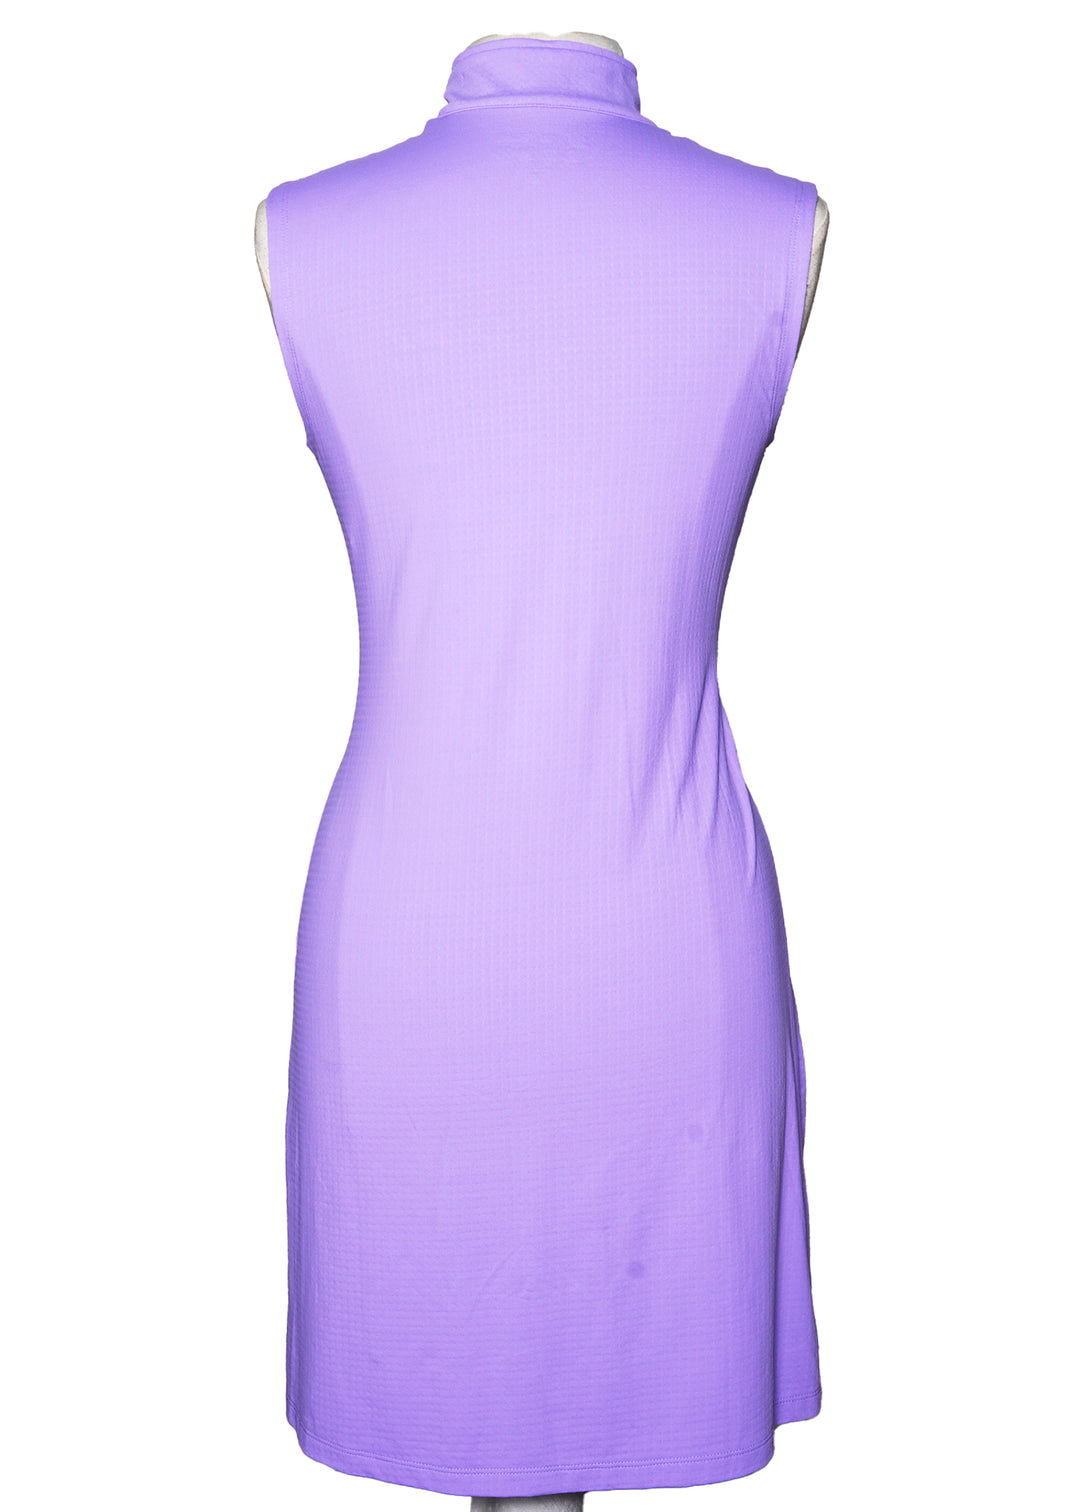 IBKUL SL Mock Neck Dress - Lavender - Skorzie